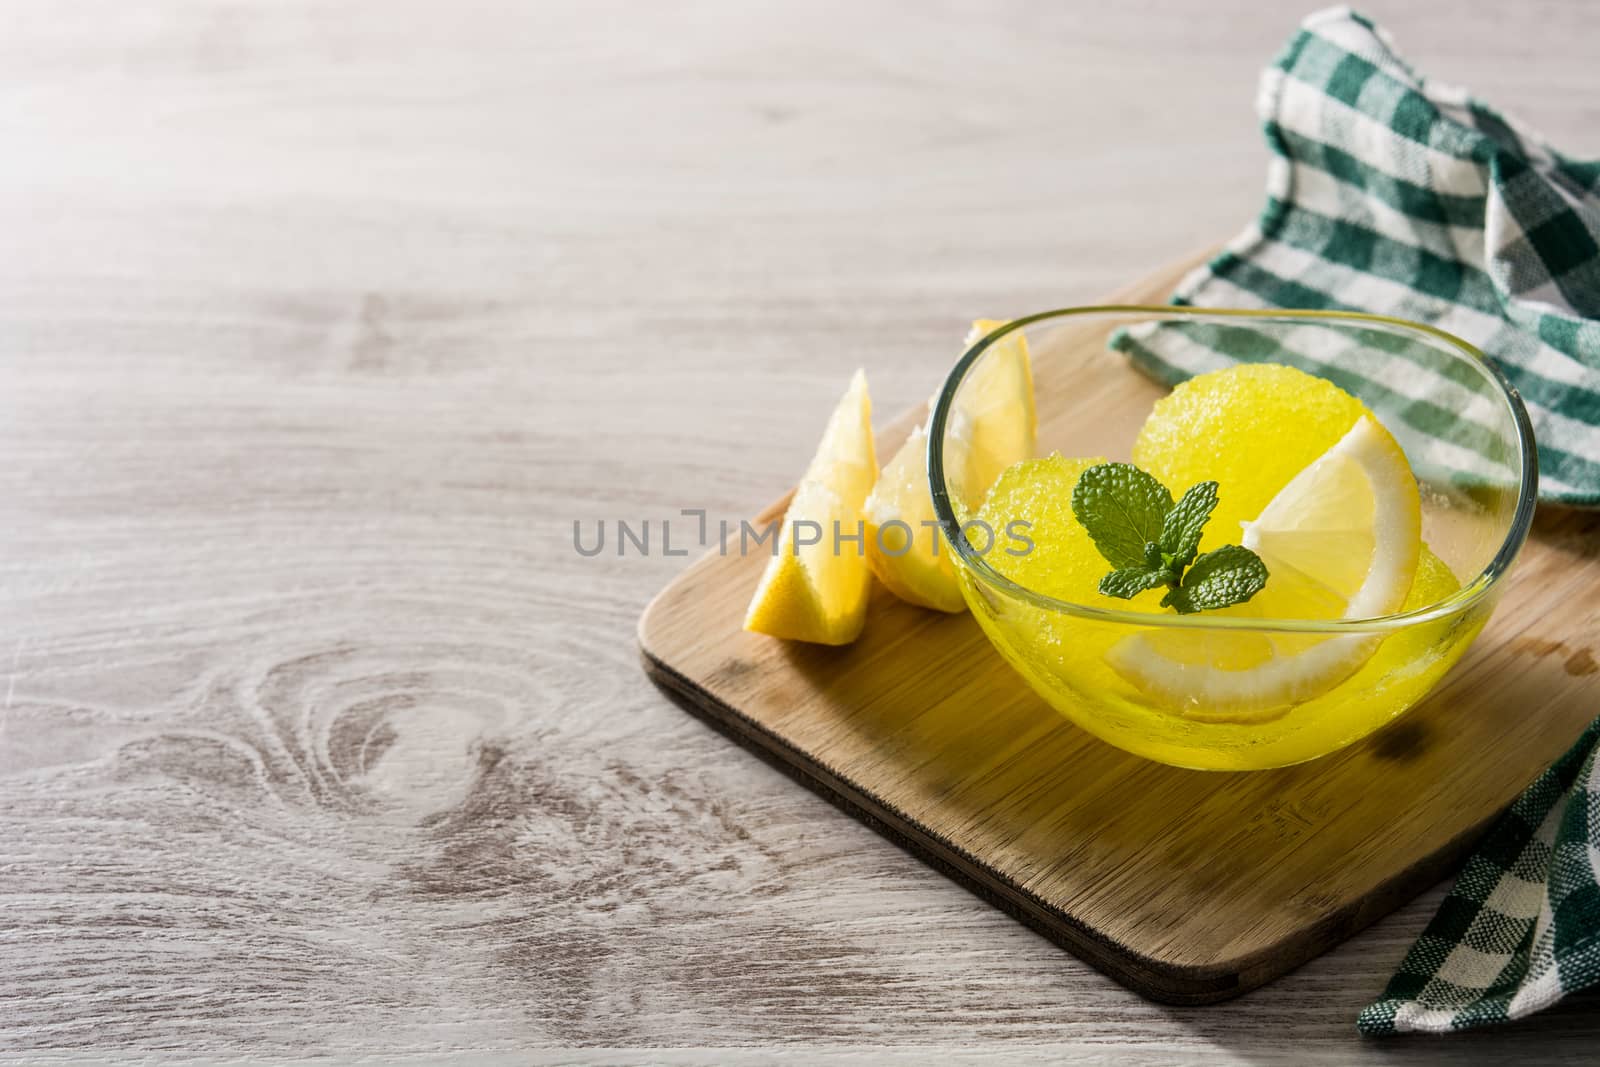 Lemon sorbet in glasses on wooden table